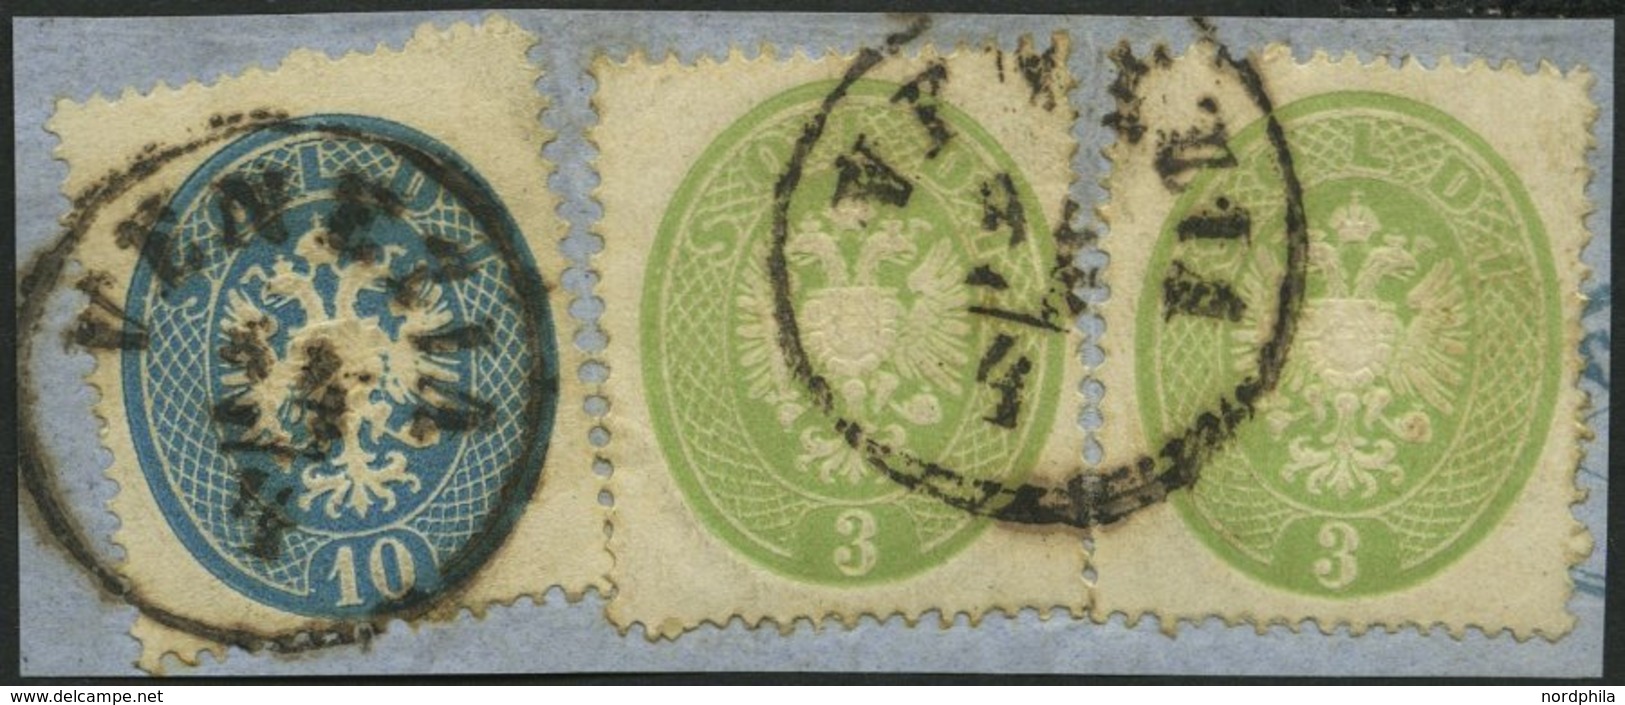 LOMBARDEI UND VENETIEN 15,17 BrfStk, 1863, 3 So. Grün (2x) Und 10 So. Blau Auf Prachtbriefstück, K1 VENEZIA, Gepr. Dr. F - Lombardo-Vénétie